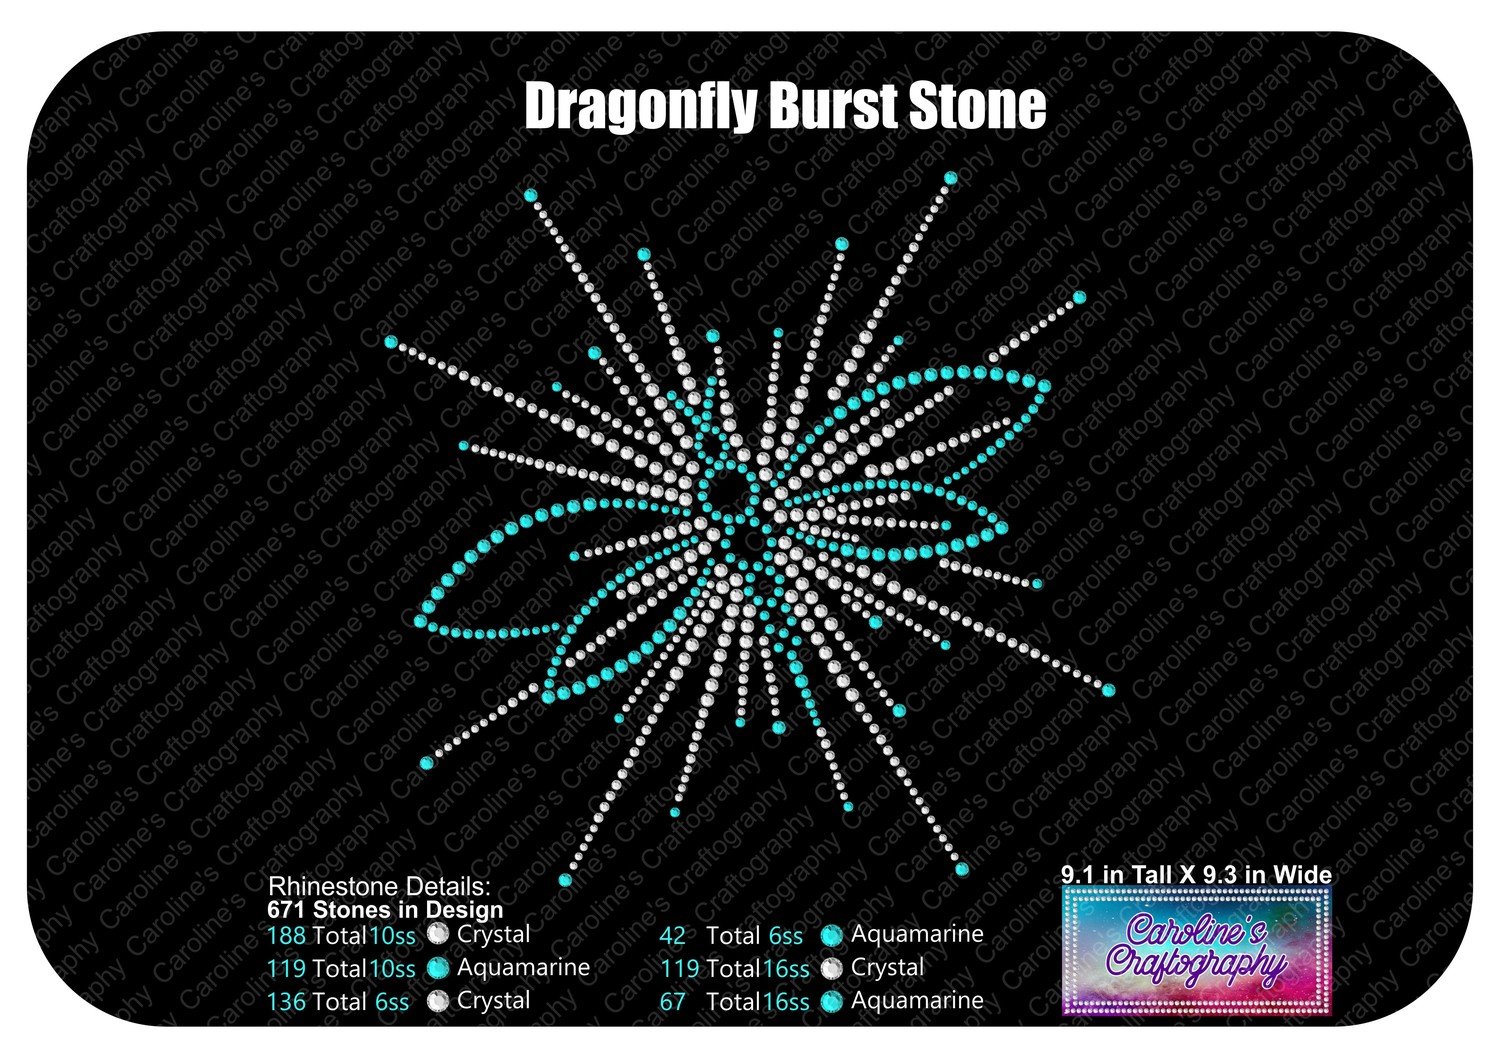 Dragonfly Burst Stone